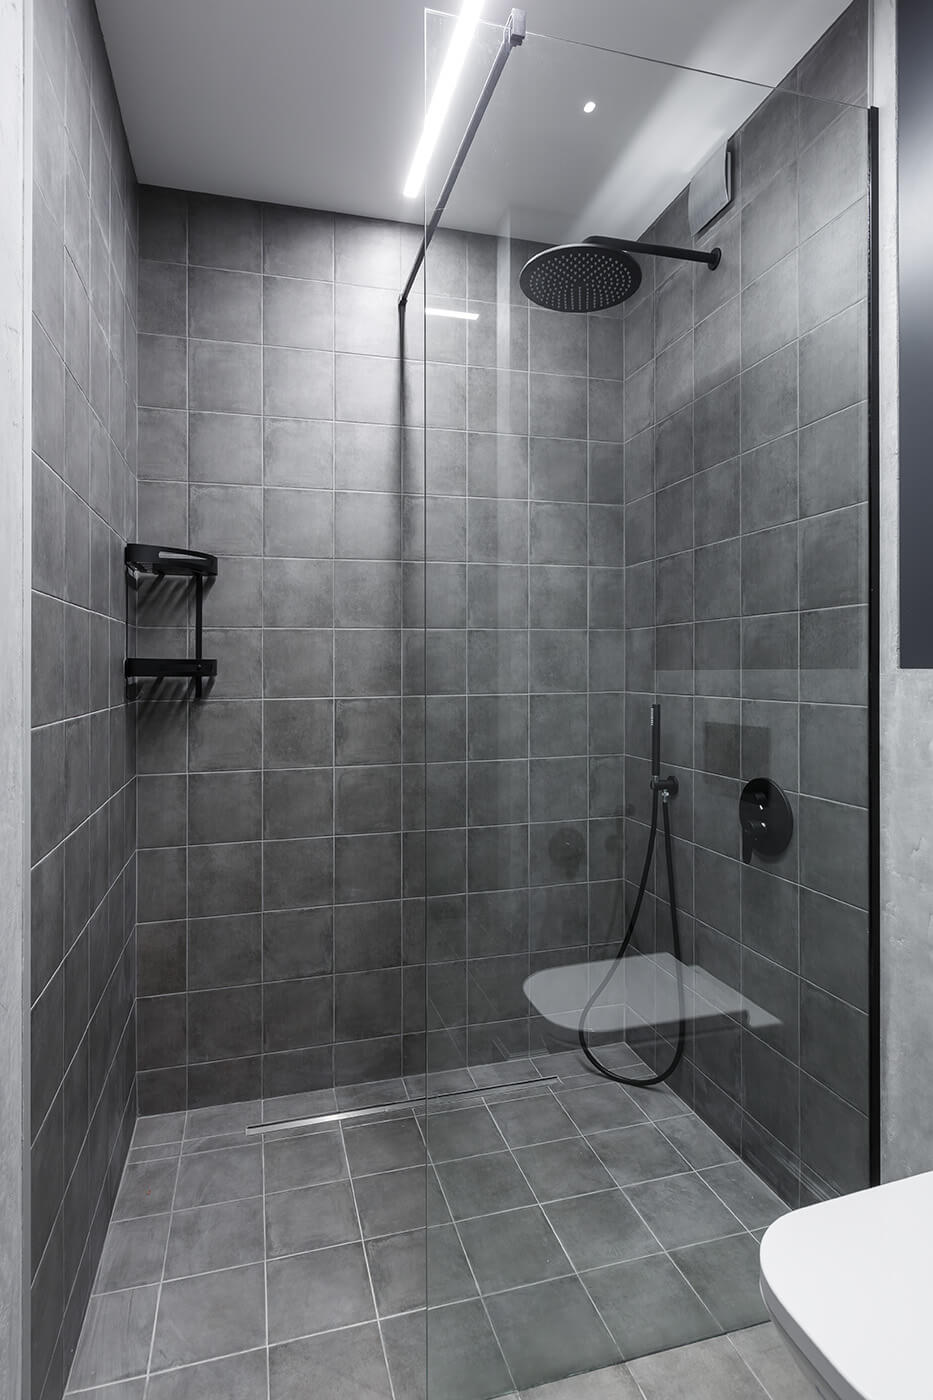 индивидуальная мебель для ванной комнаты - проекты Setus Design